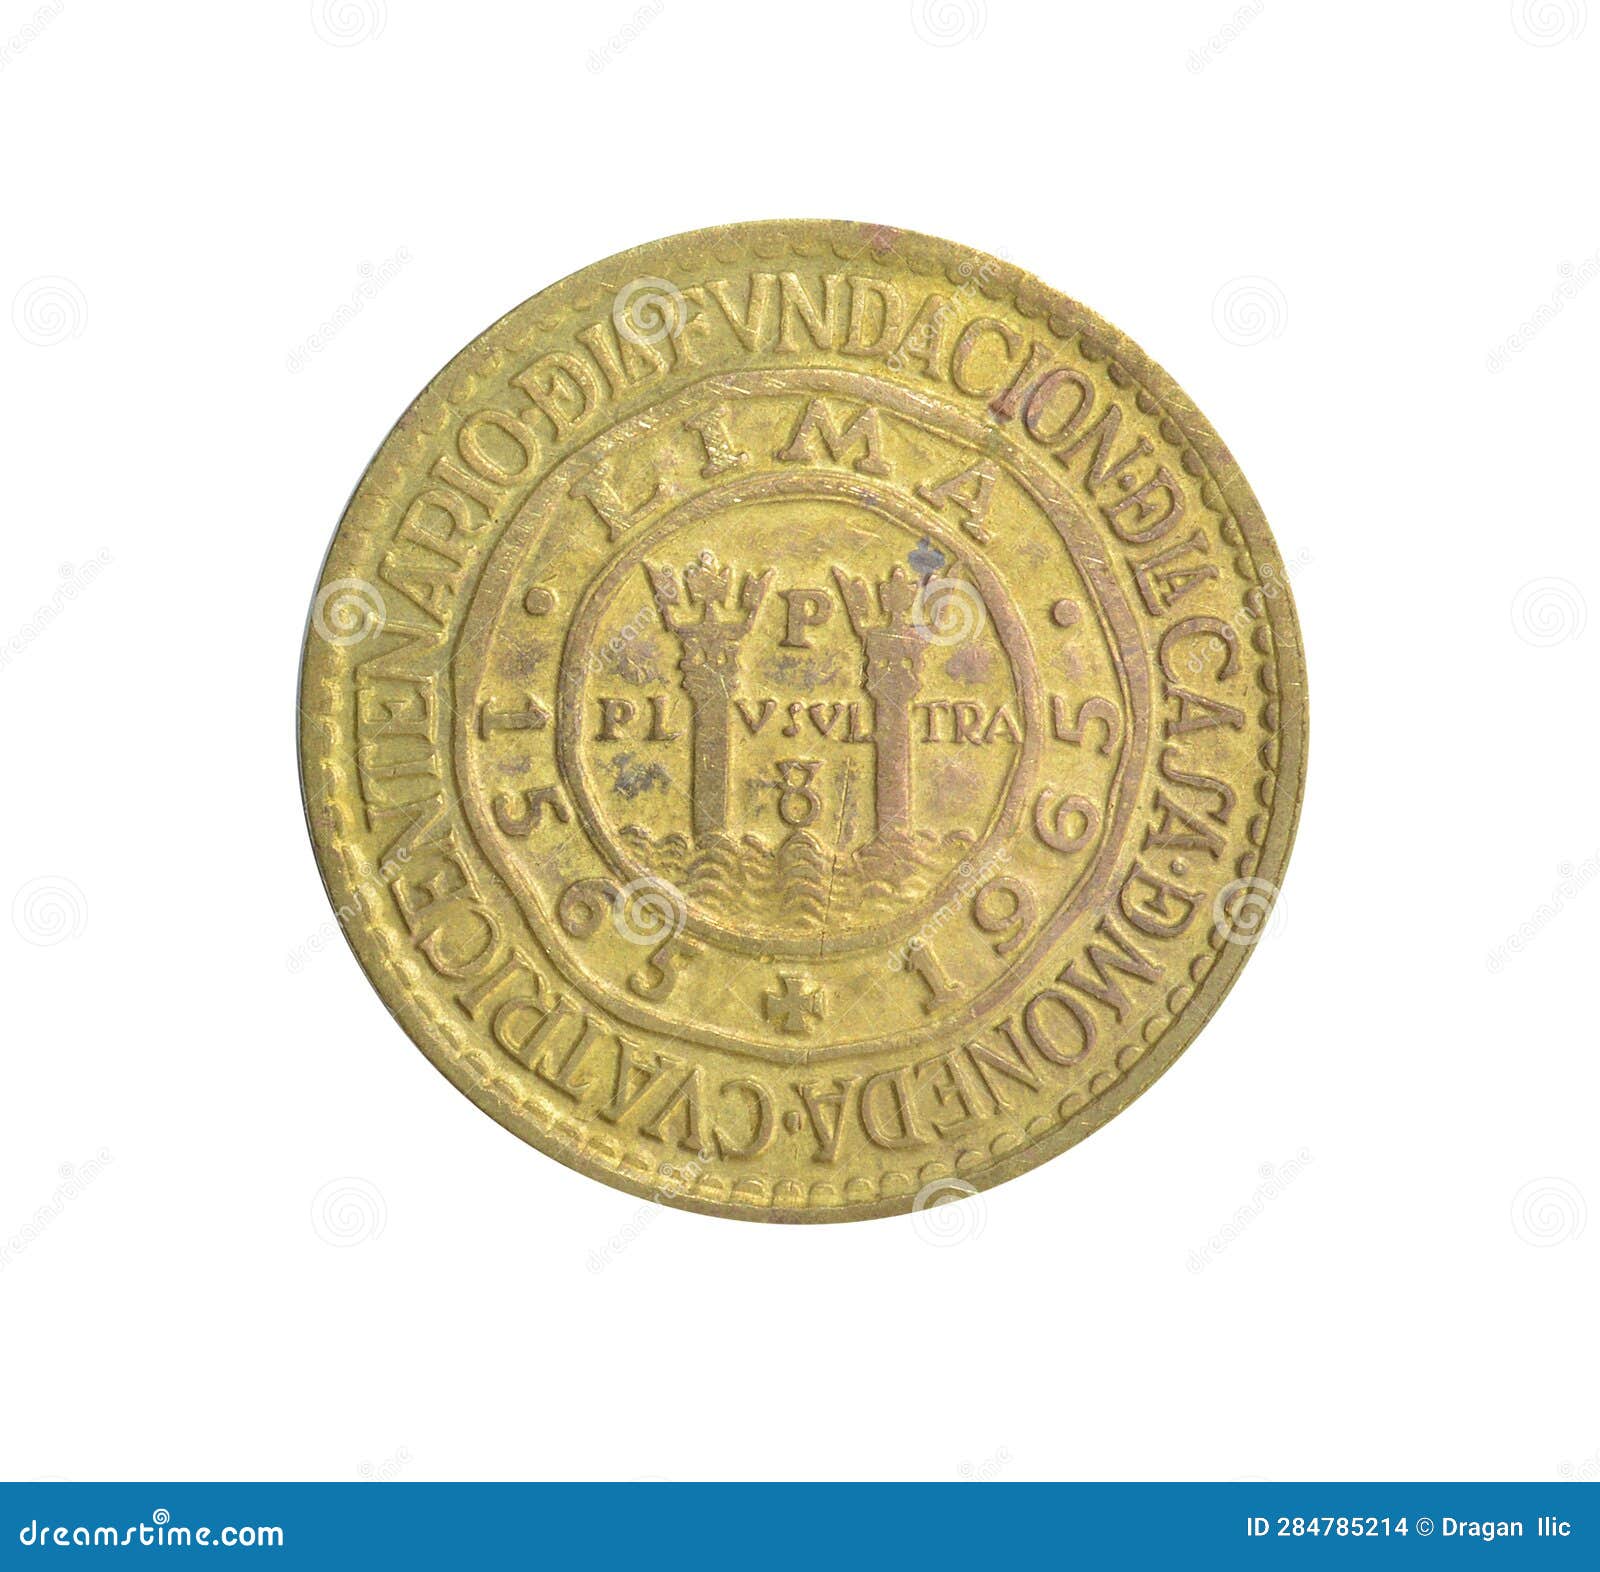 reverse of commemorative half sol de oro coin made by peru in 1965